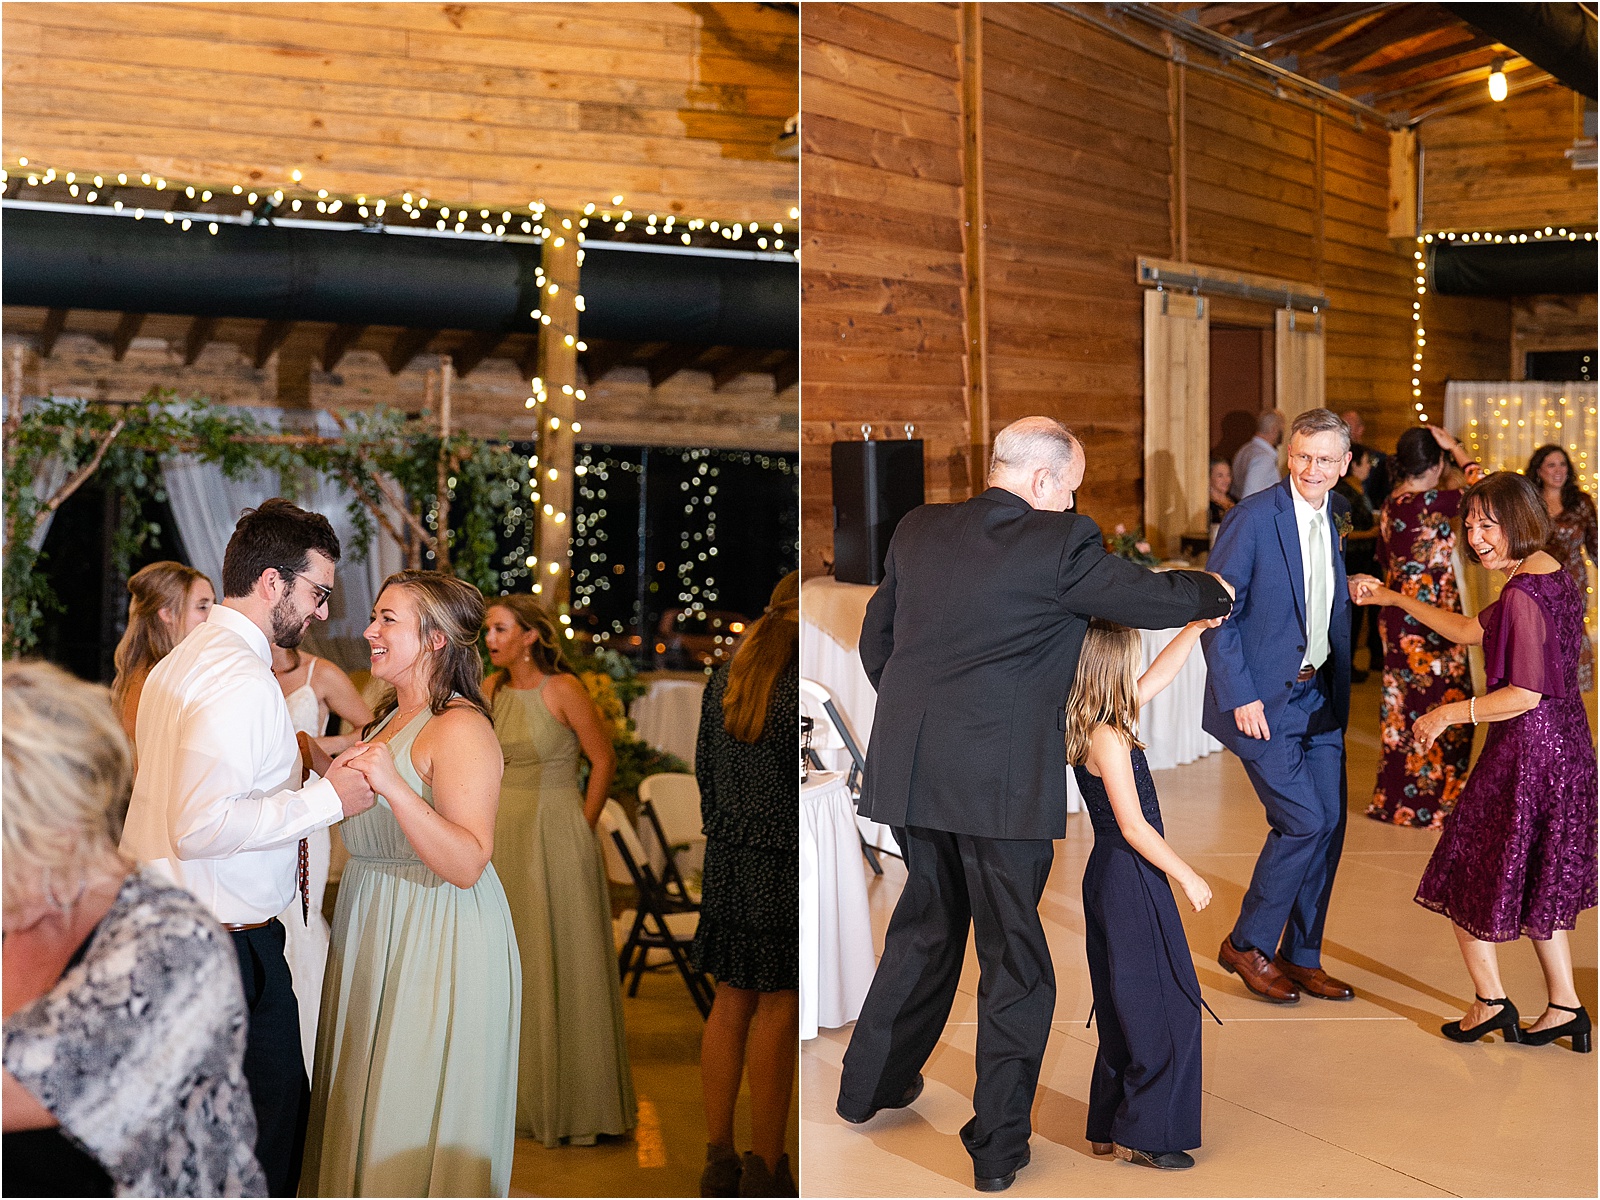 Wedding guests dancing at a barn venue in Anderson, SC